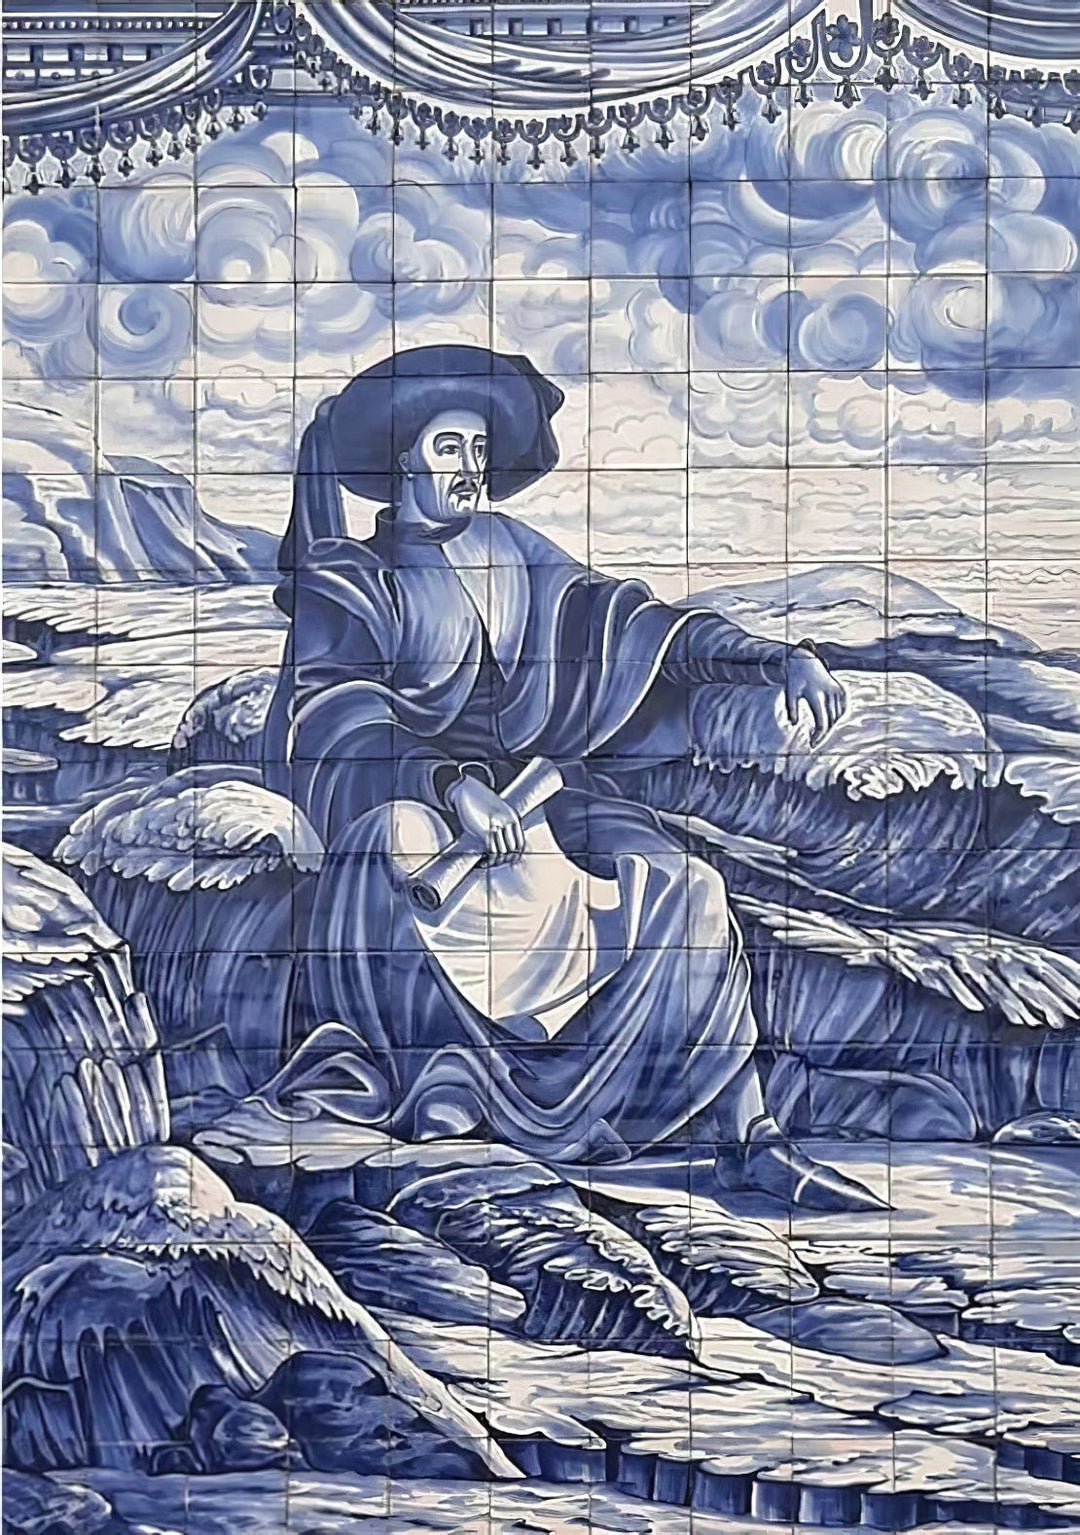 Portuguese Tile Mural "Henry the Navigator" | Ref. PT511